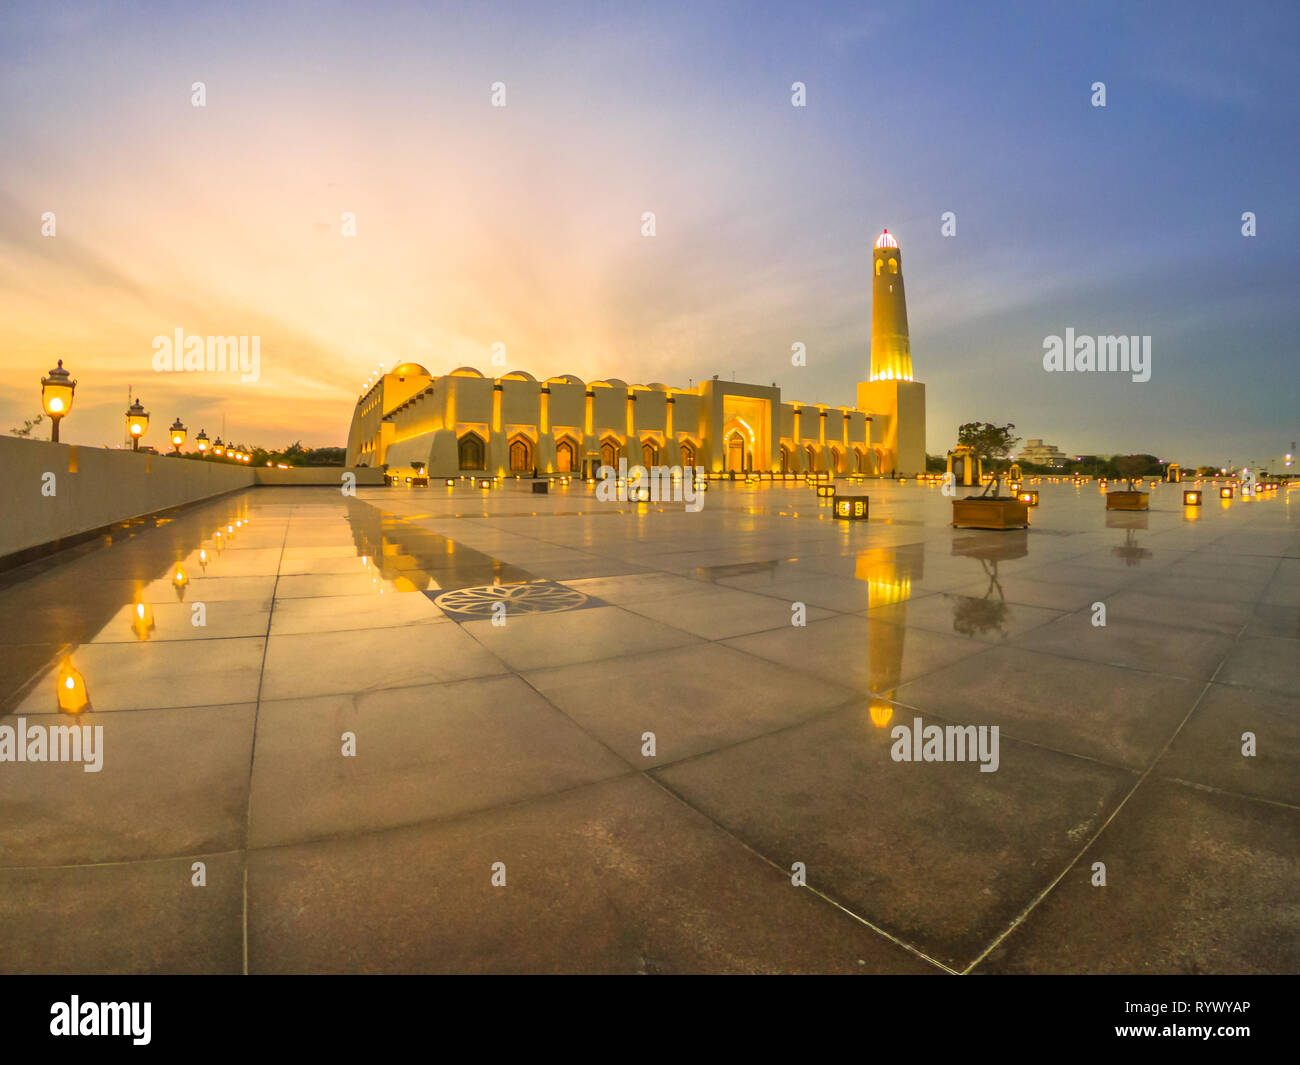 Grand angle de visualisation d'État Grande Mosquée avec un minaret au crépuscule, réfléchissant sur la chaussée en marbre à l'extérieur. Mosquée de l'État du Qatar, le Moyen-Orient, l'Arabian Banque D'Images